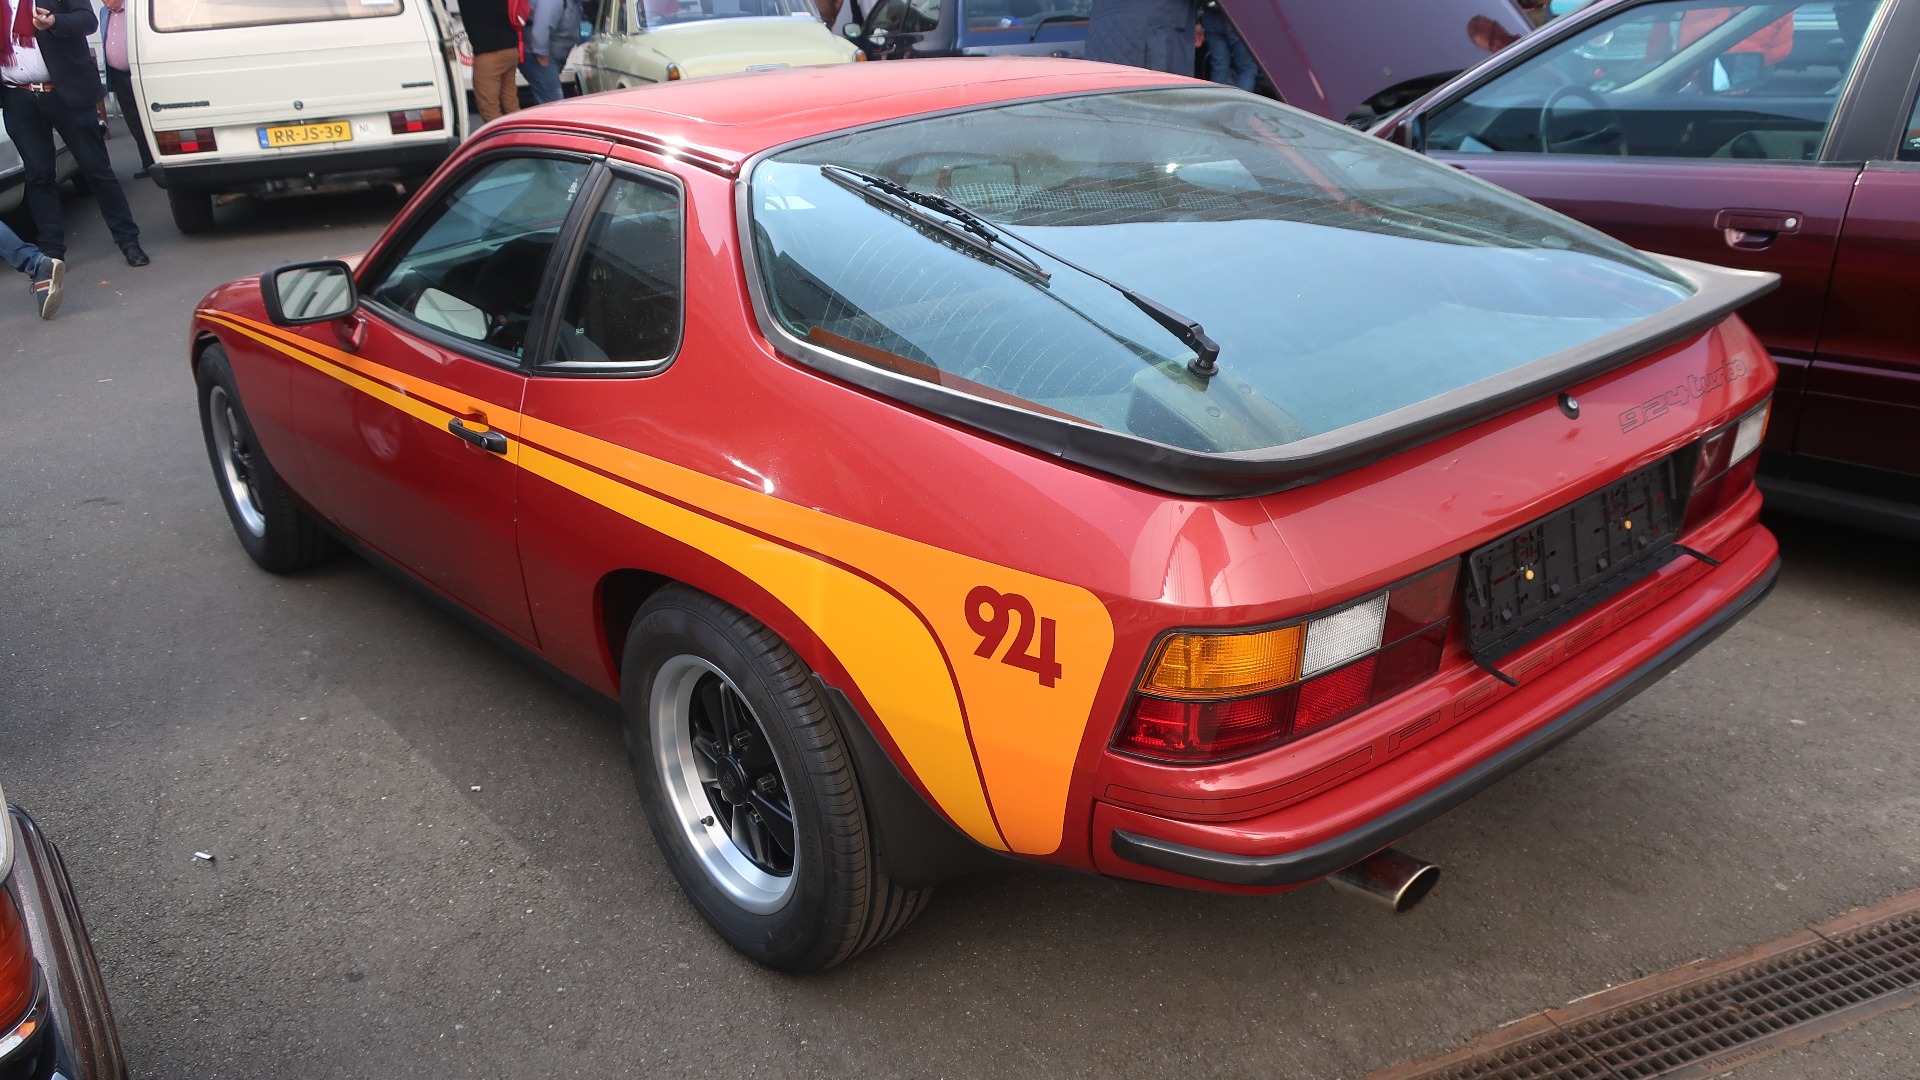 1980 Porsche 924 Turbo til salgs for 20.000 Euro.